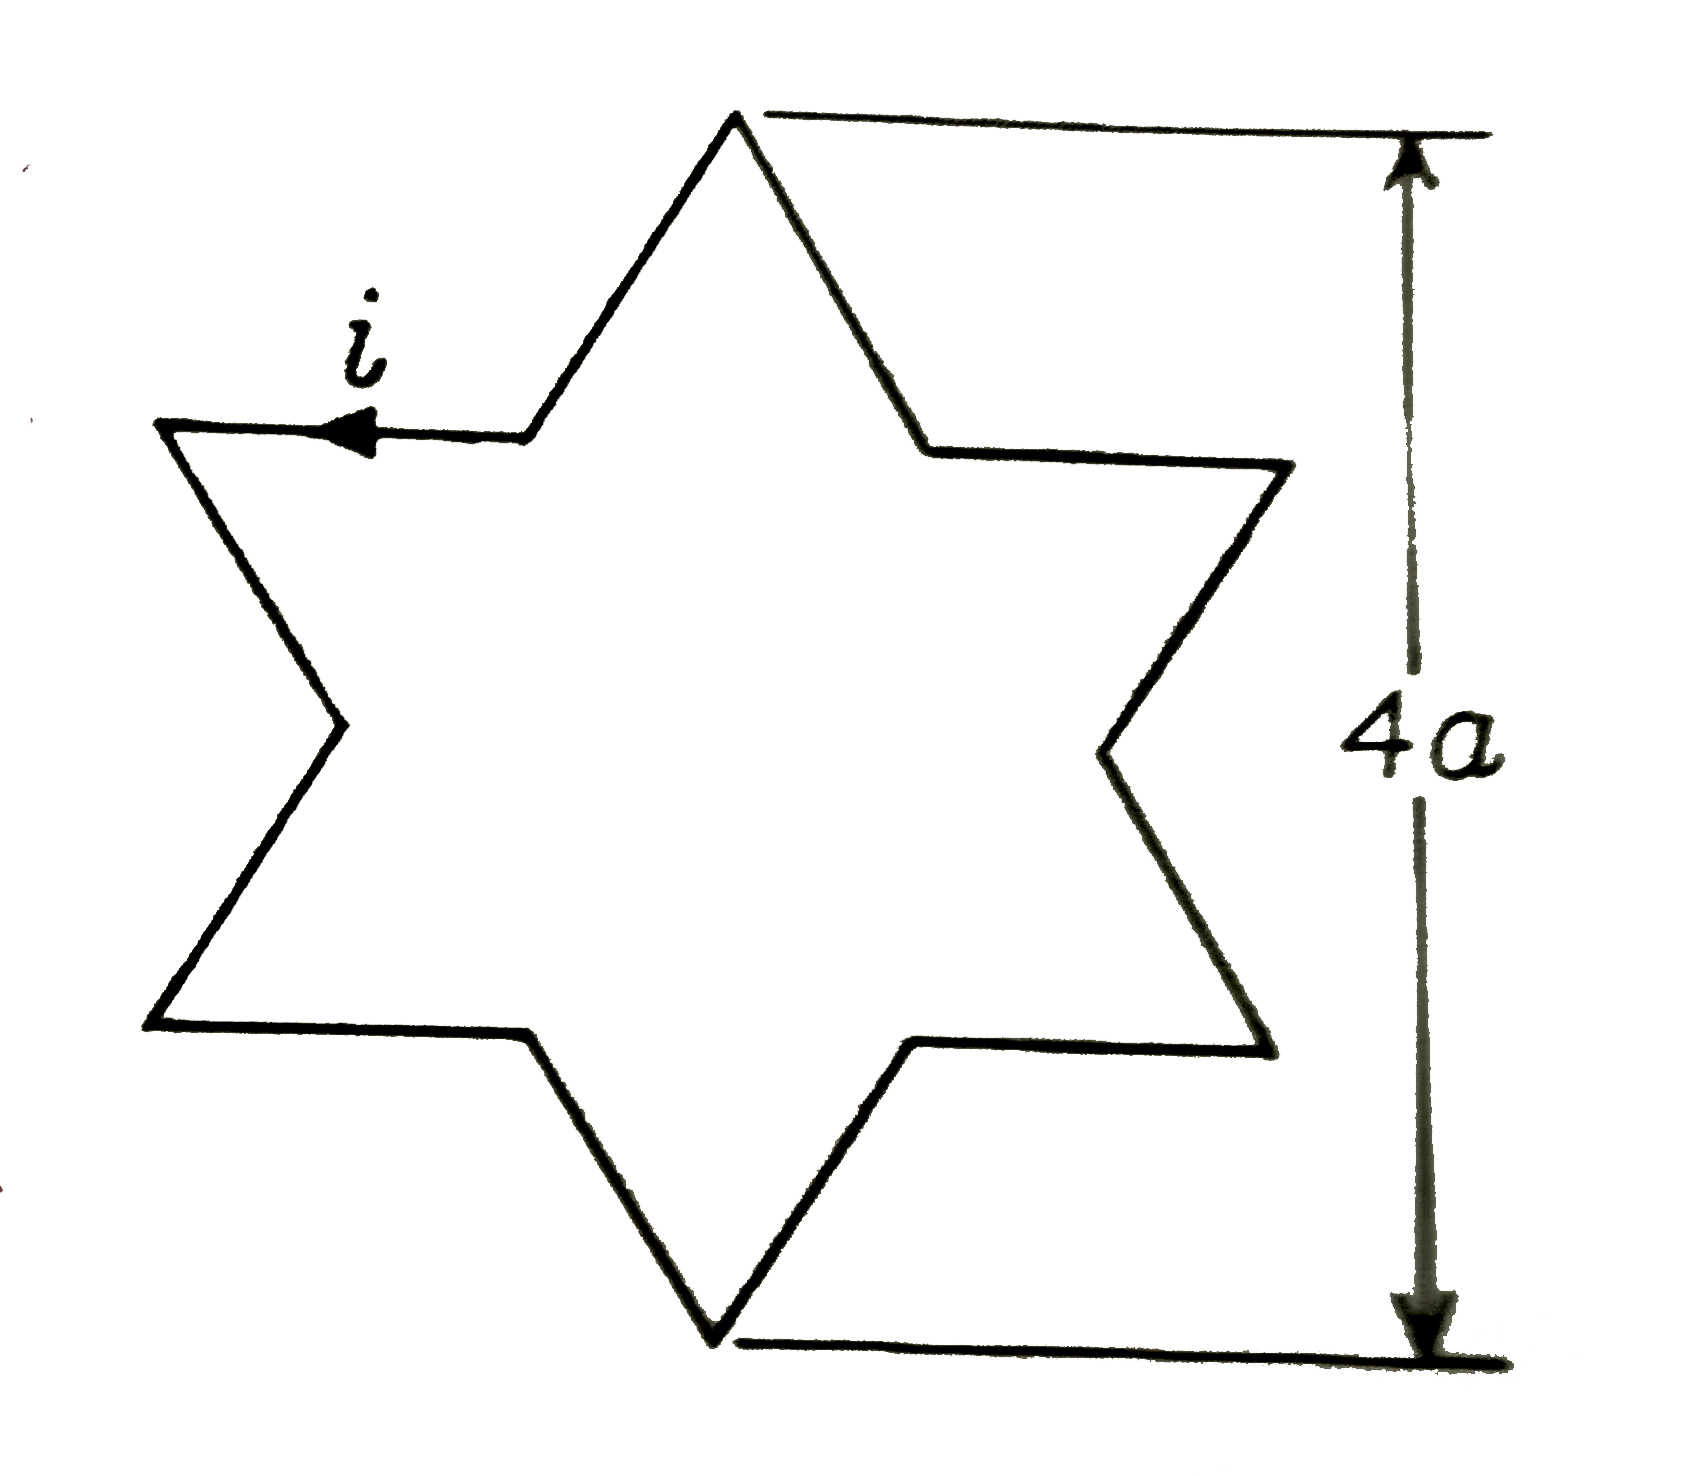 जैसे की चित्रित किया गया है। एक सम्मित तारे (symmetric star)के आकार के चालक में अपरिवर्तित धरा ी बह रही है। यहाँ विपरीत शीर्षों (diametrically opposoite vertices) के बीच की दुरी 4a है। चालक के केंद्र पर चुंबकीय क्षेत्र का मान होगा :